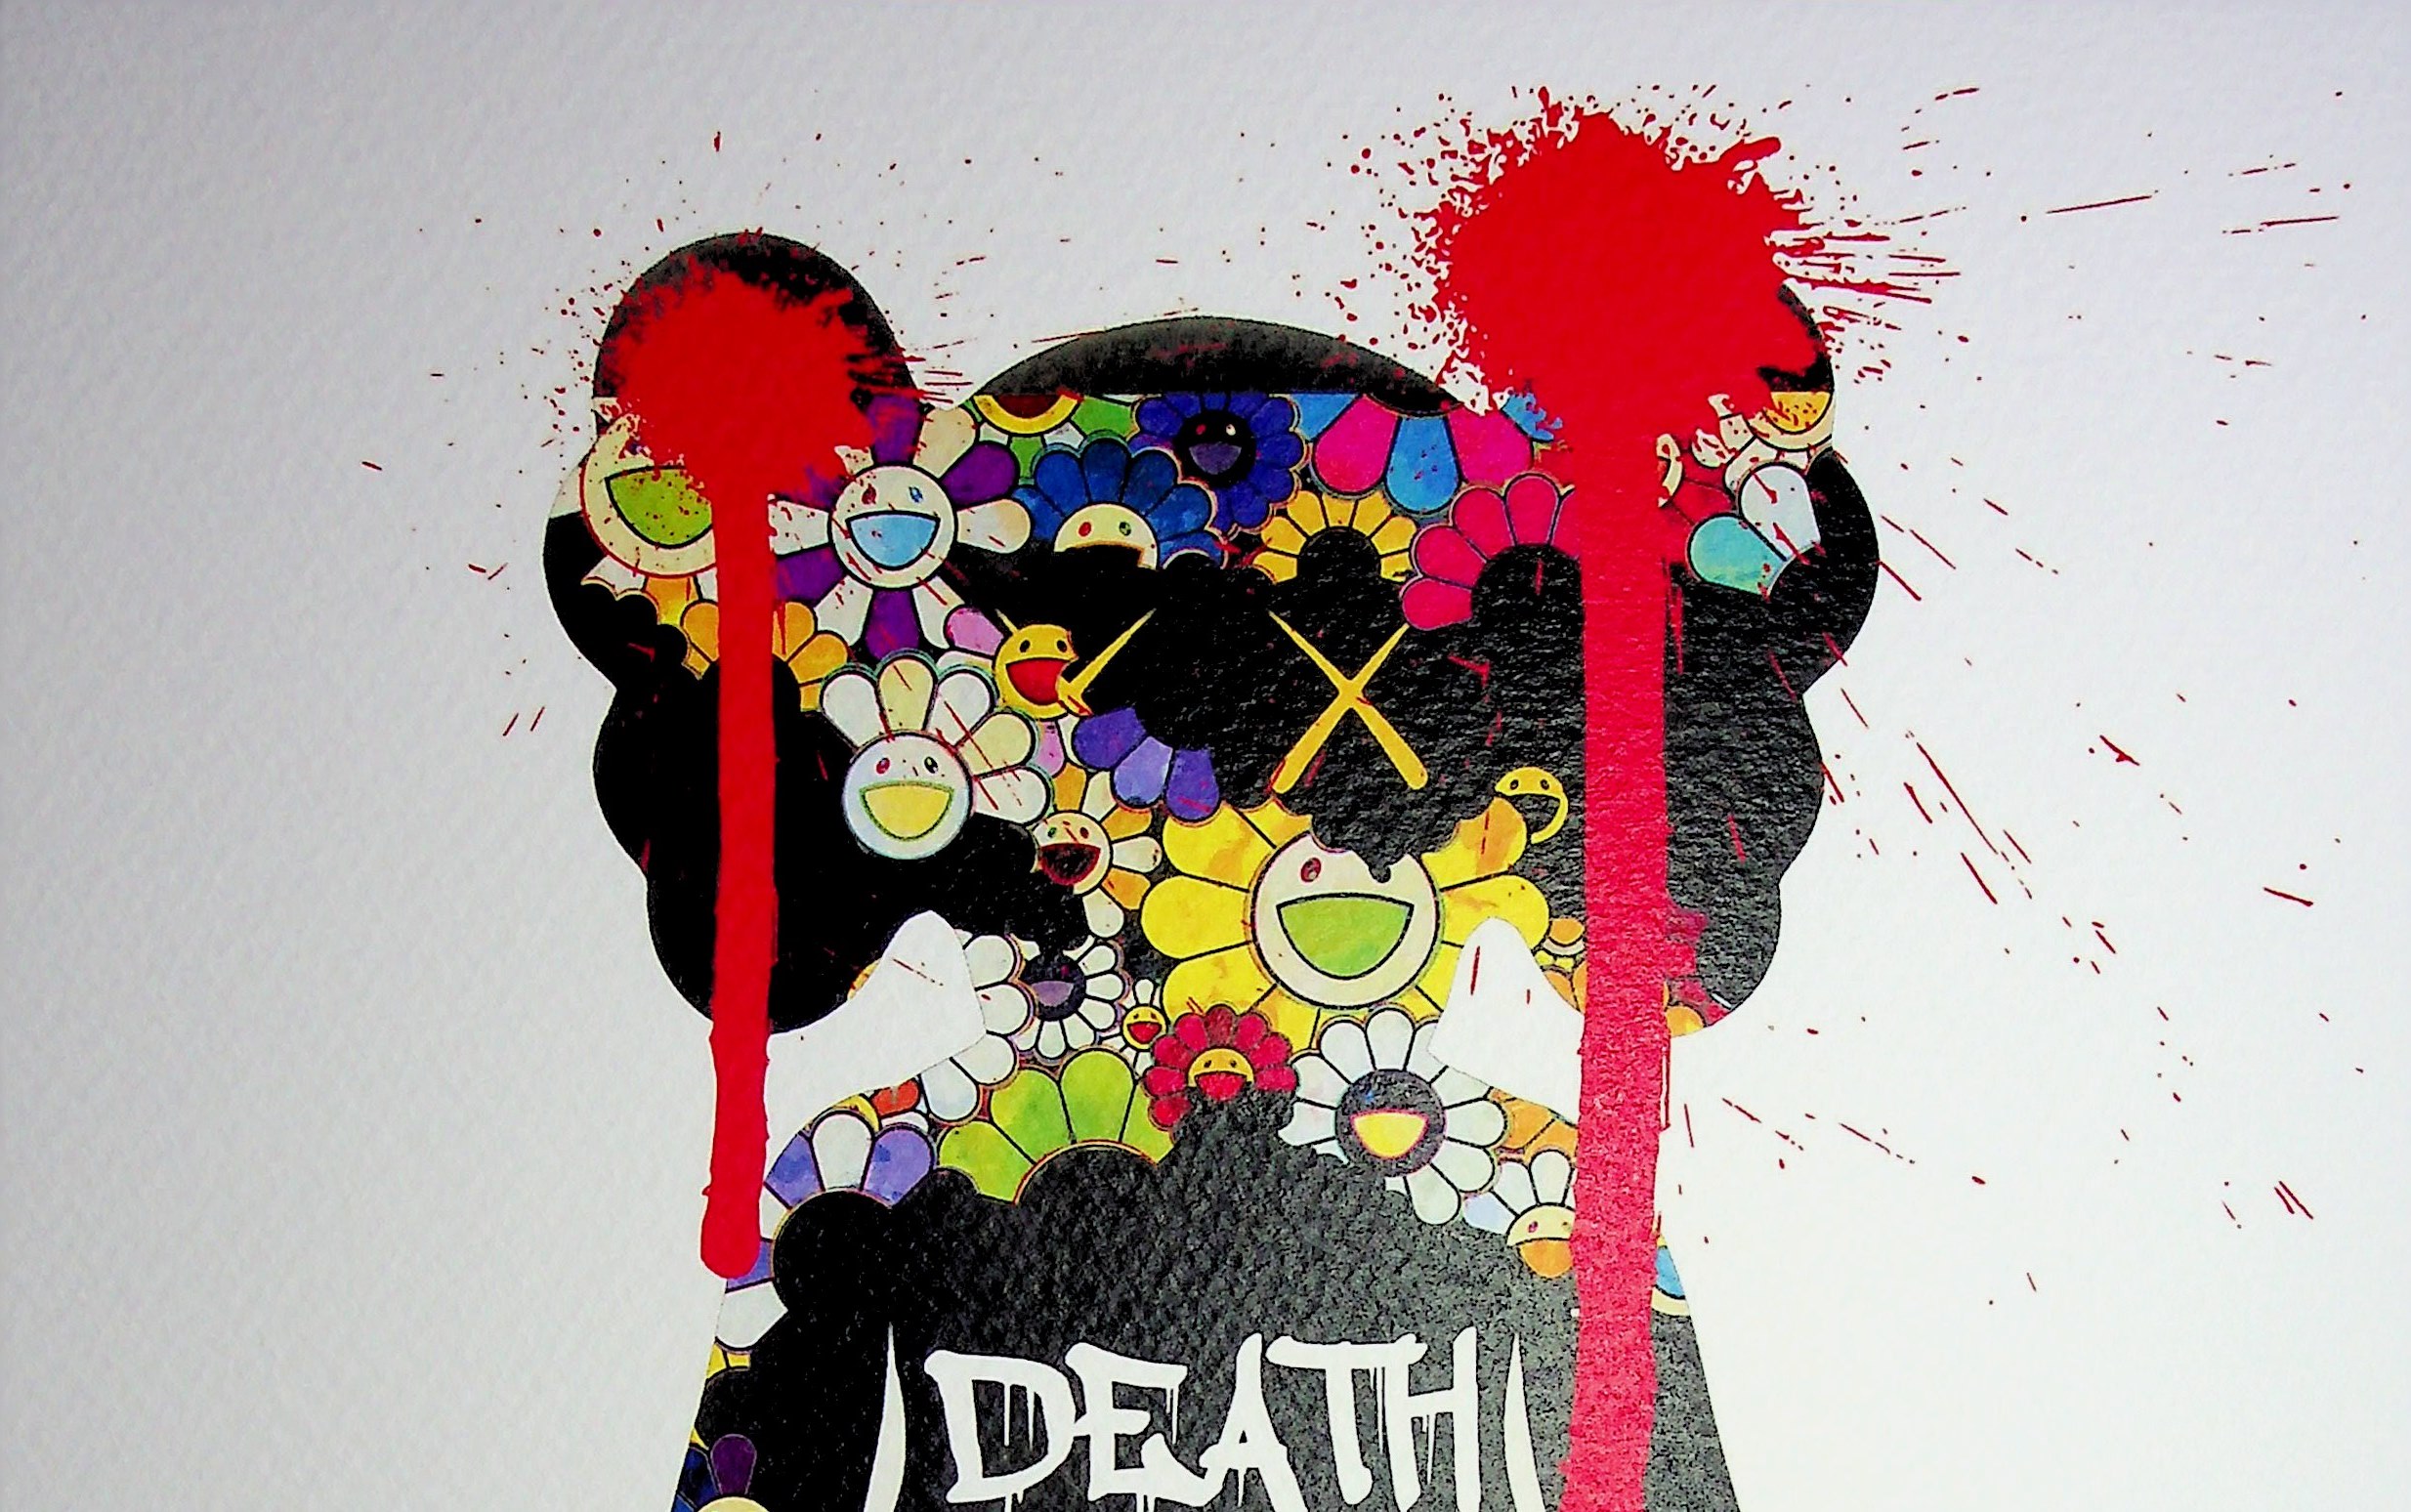 DEATH NYC ltd ed signed LG street art print 45x32cm takashi